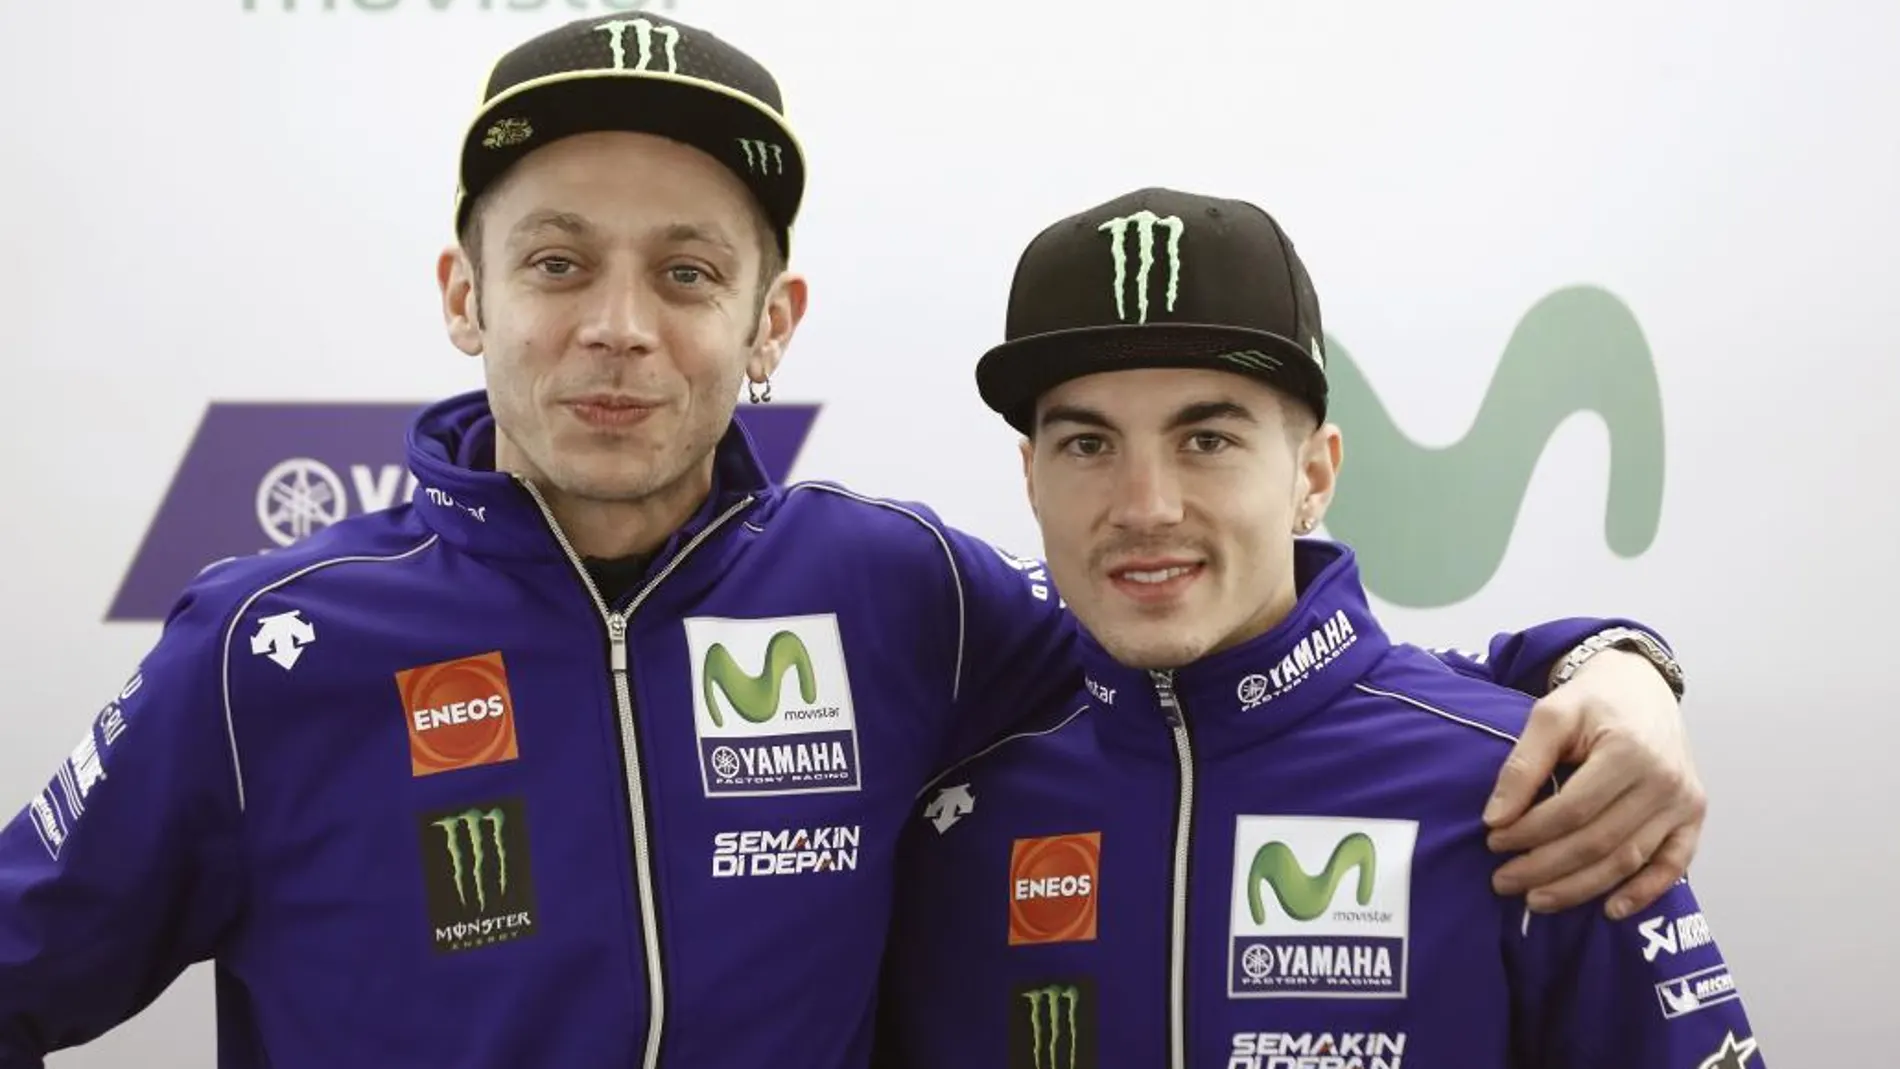 Los pilotos de motociclismo Valentino Rossi y Maverick Viñales, posan durante la presentación del Movistar Yamaha MotoGP Team